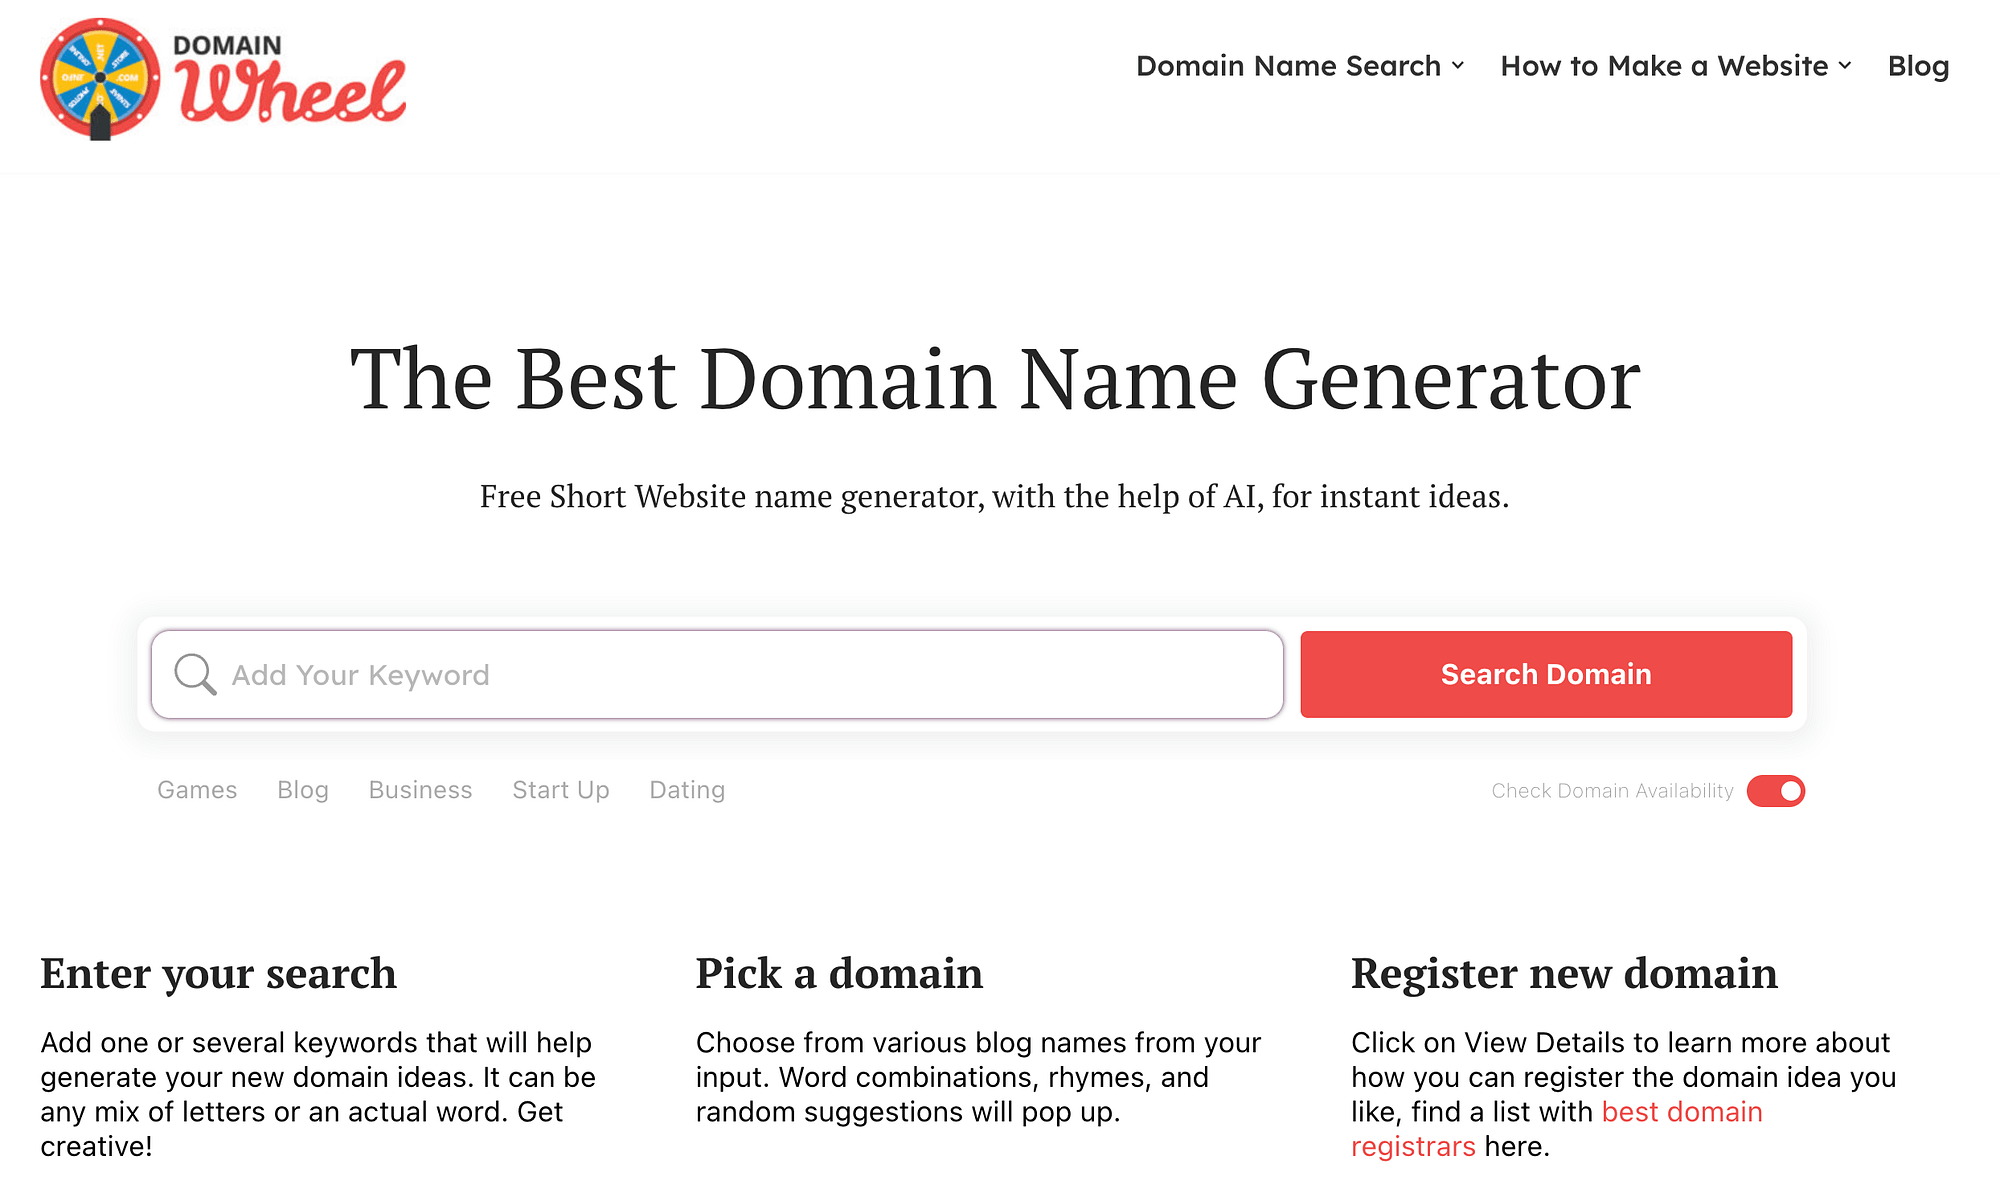 Domain Wheel domain name generator